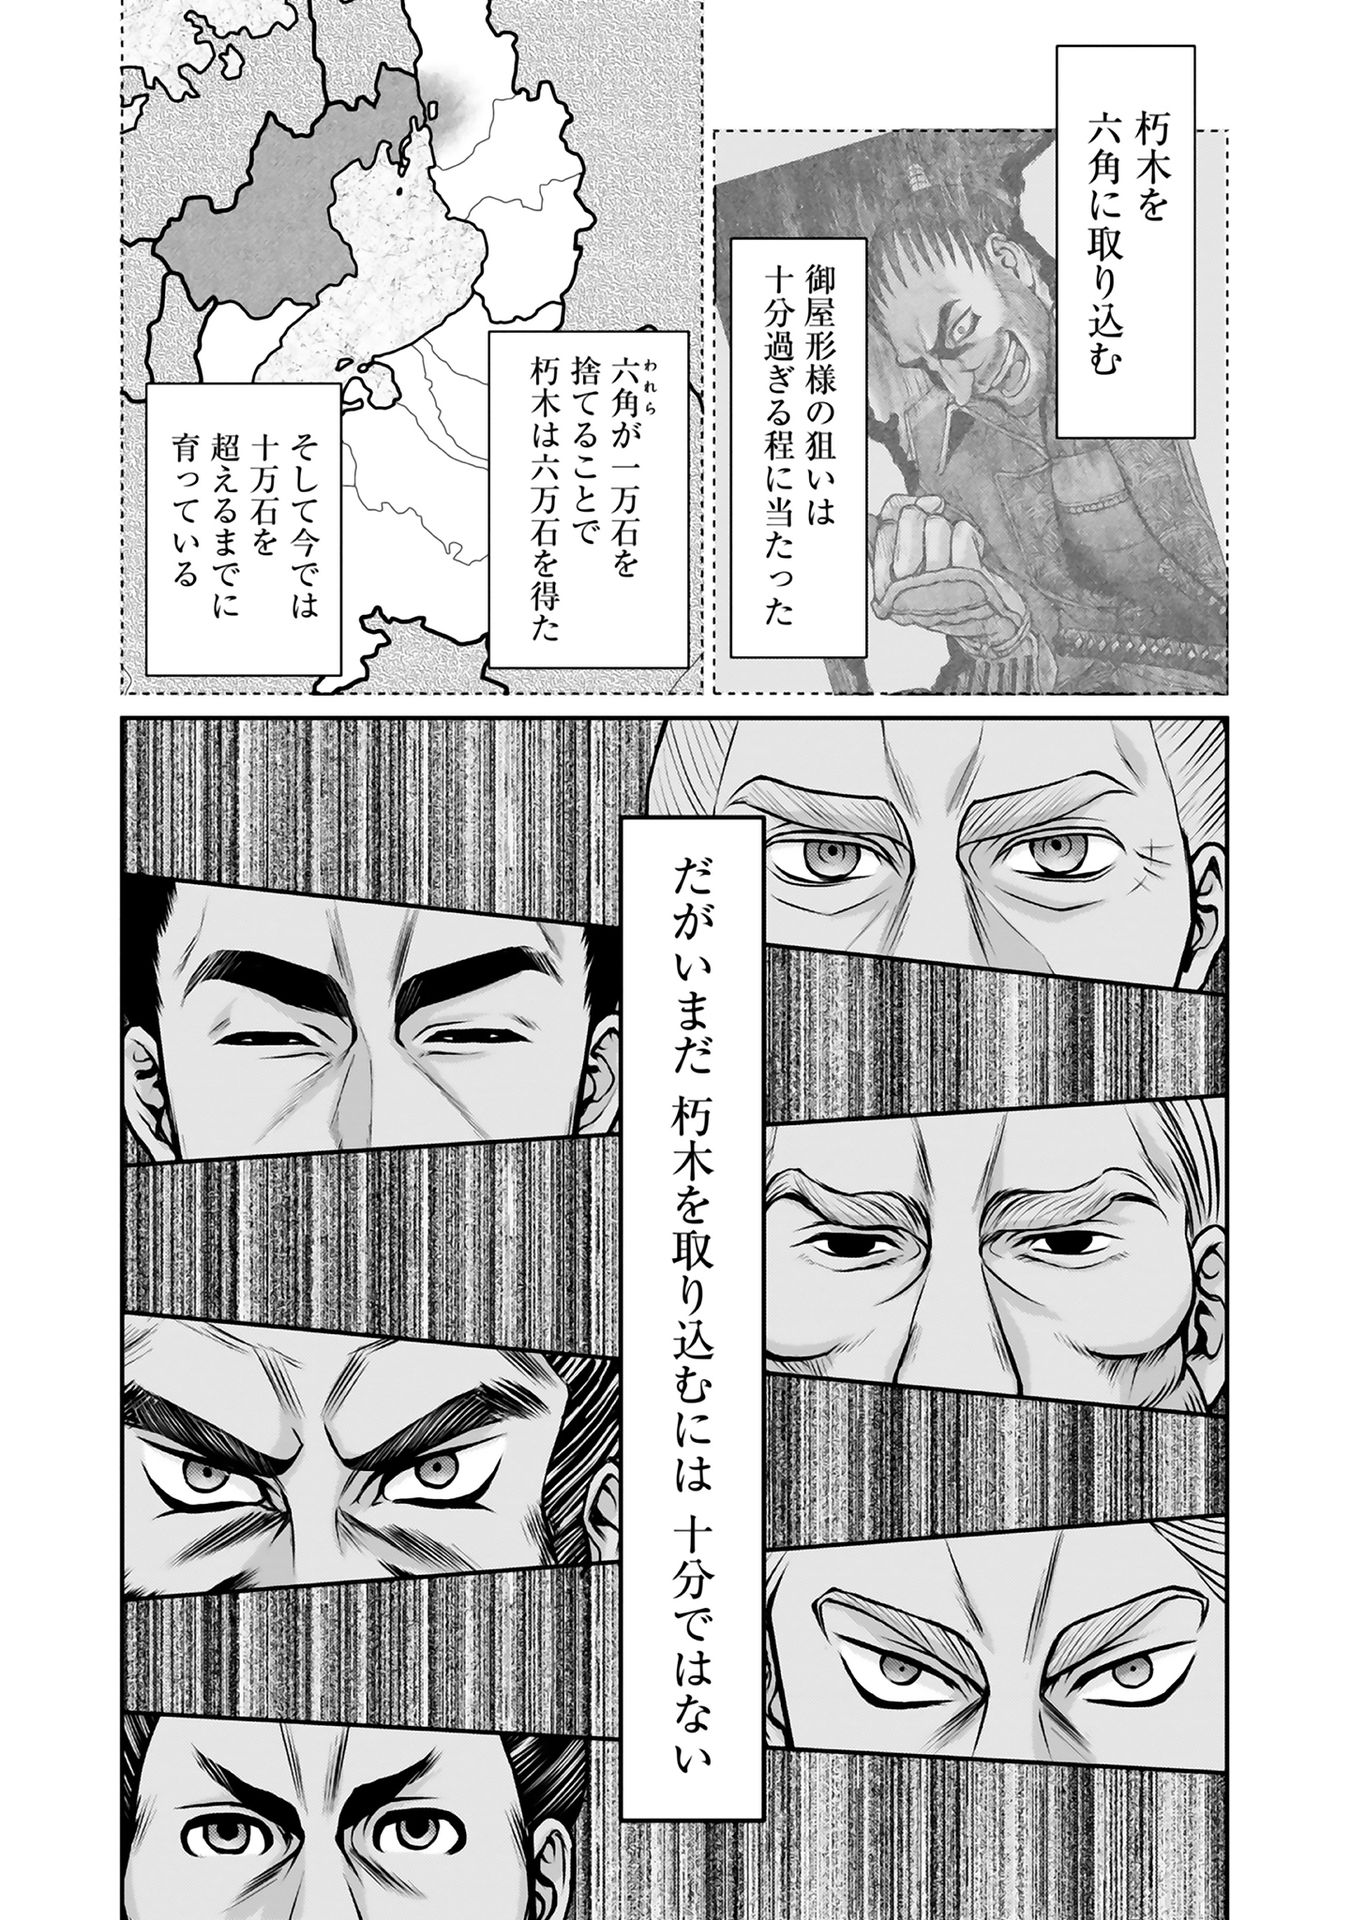 Afumi no Umi – Minamo ga Yureru Toki - Chapter 9 - Page 58